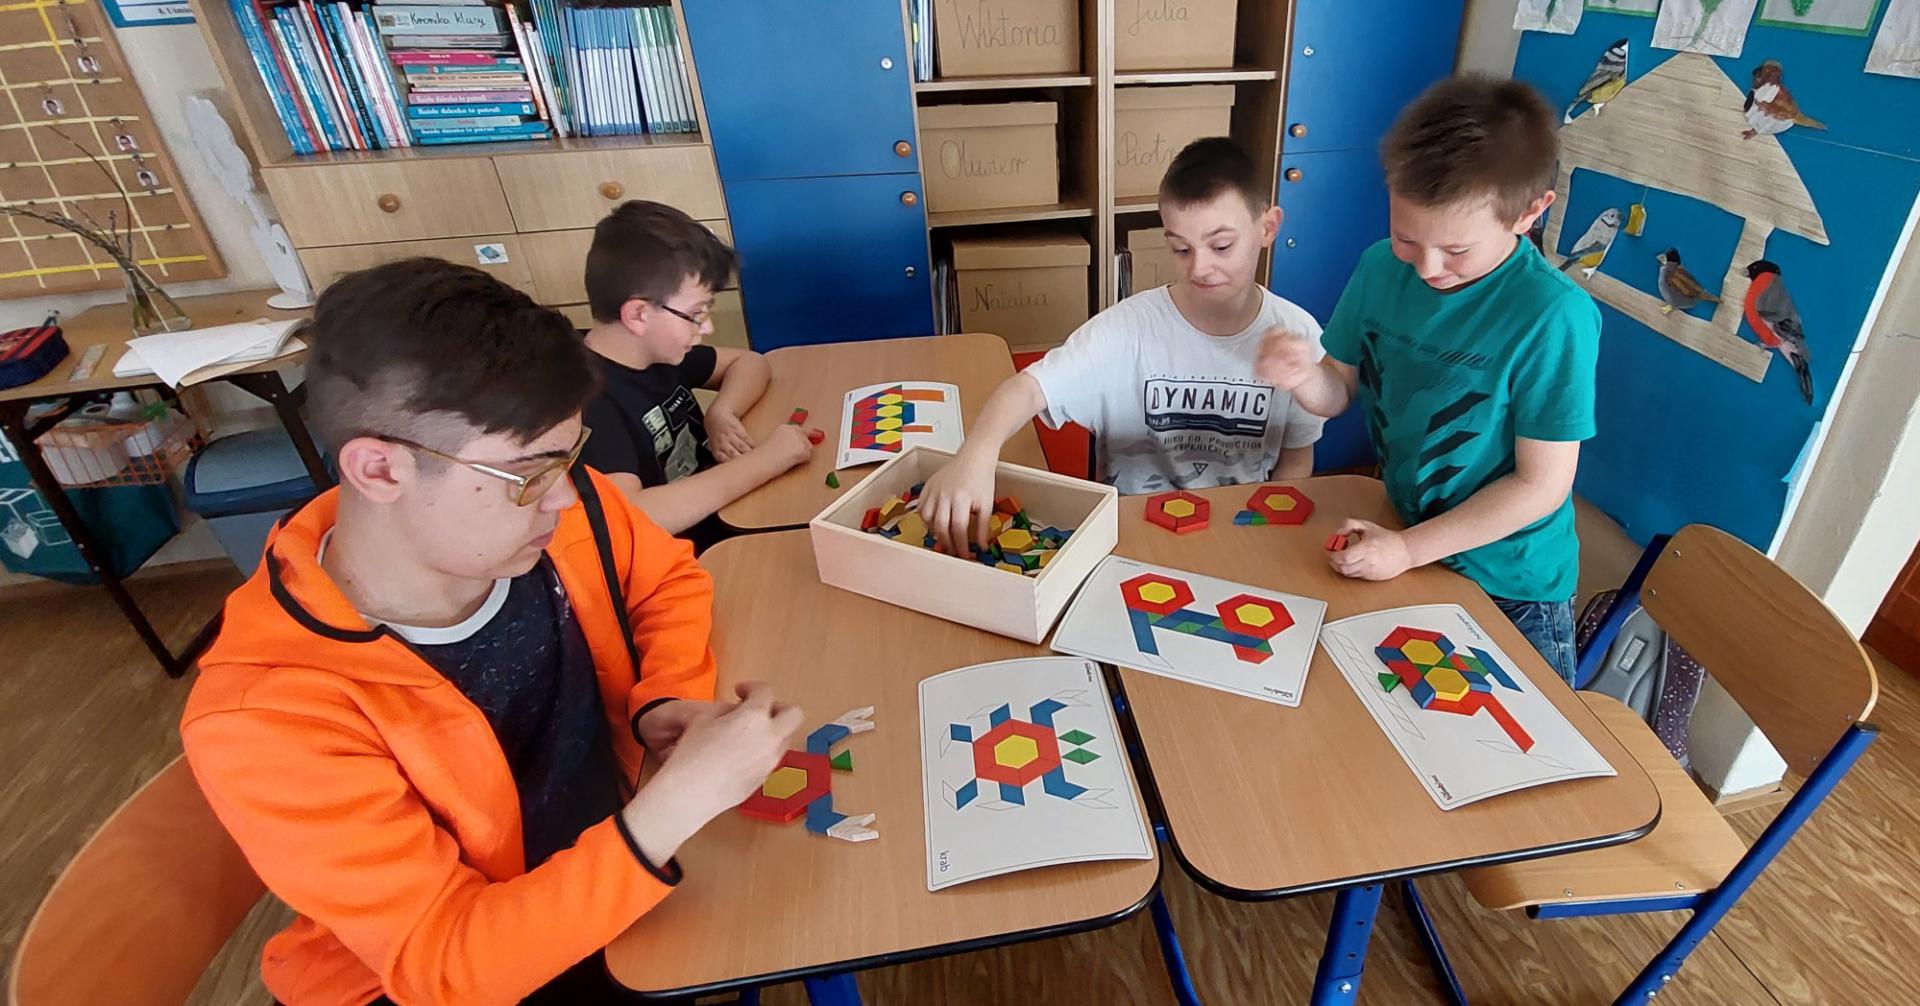 Czterech chłopców przy stolikach układa mozaikę geometryczną